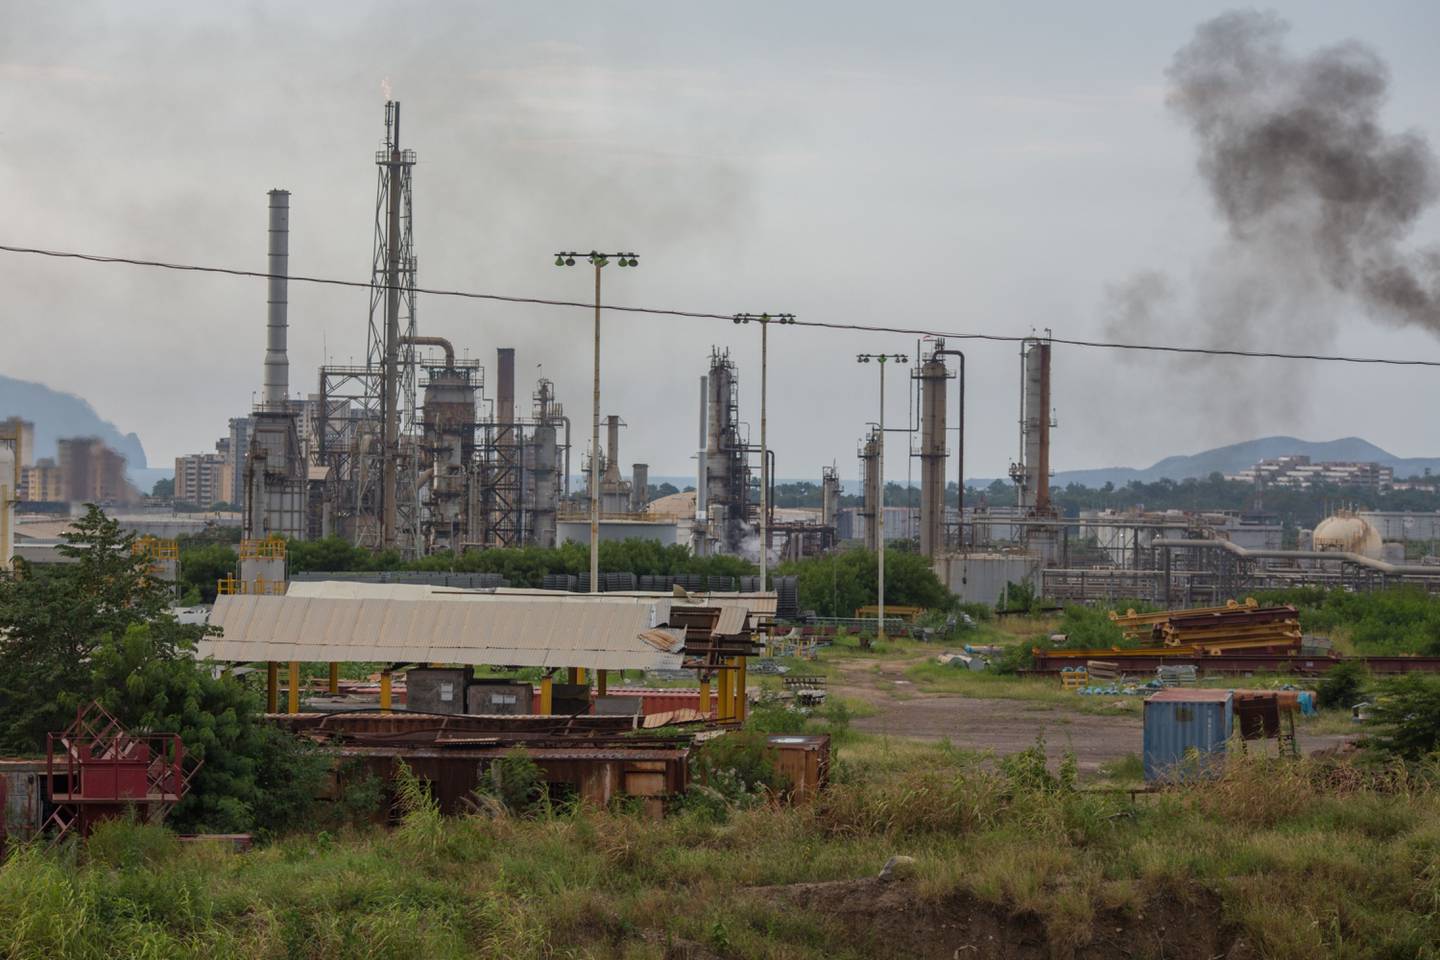 La refinería de Puerto La Cruz, Venezuela.dfd